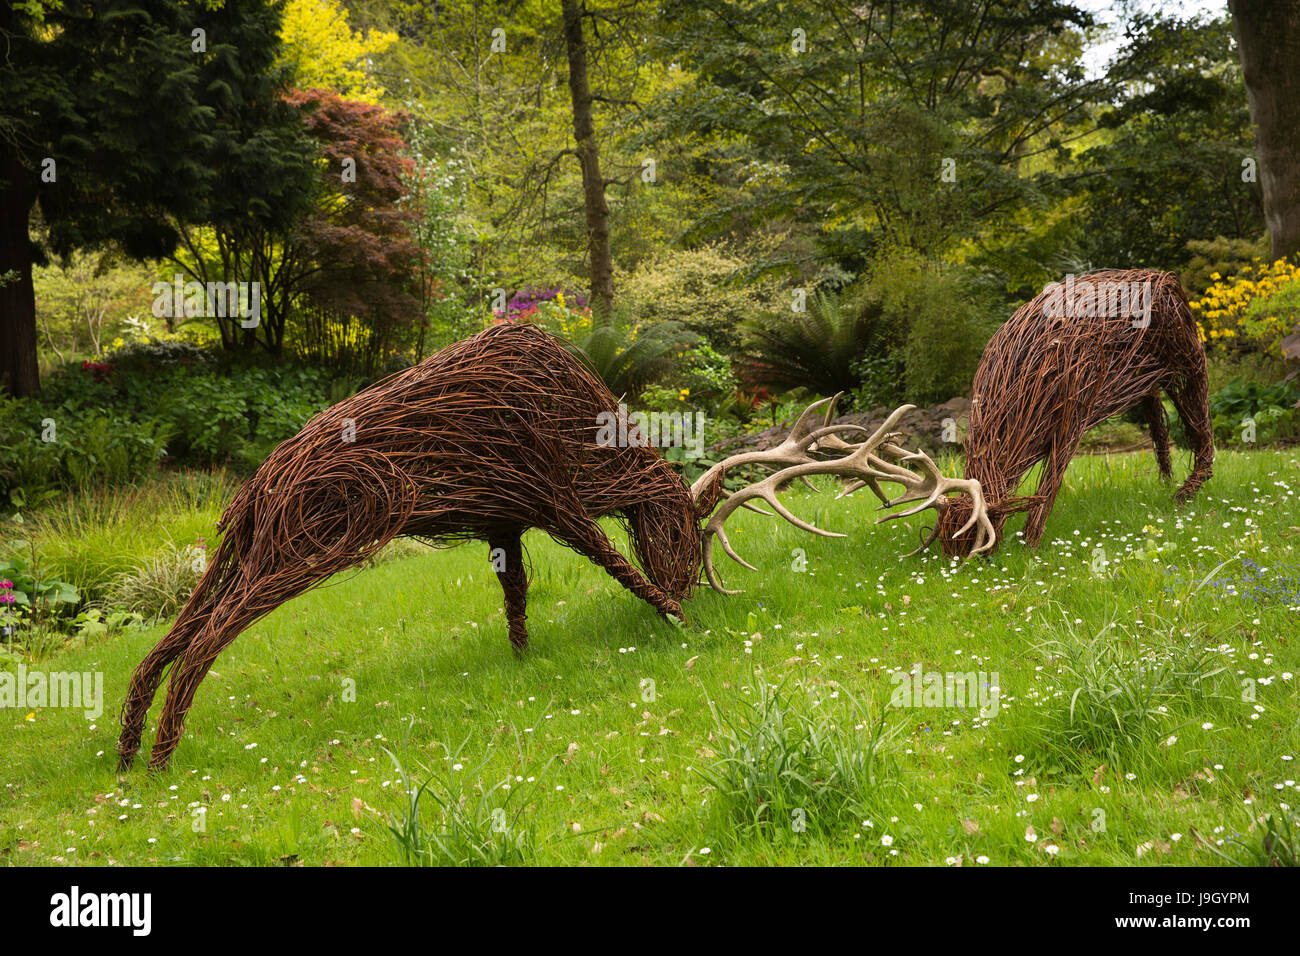 Royaume-uni l'Angleterre, dans le Dorset, Abbotsbury, sous les jardins tropicaux, Jo Sadler's rut du cerf sculpture willow Banque D'Images